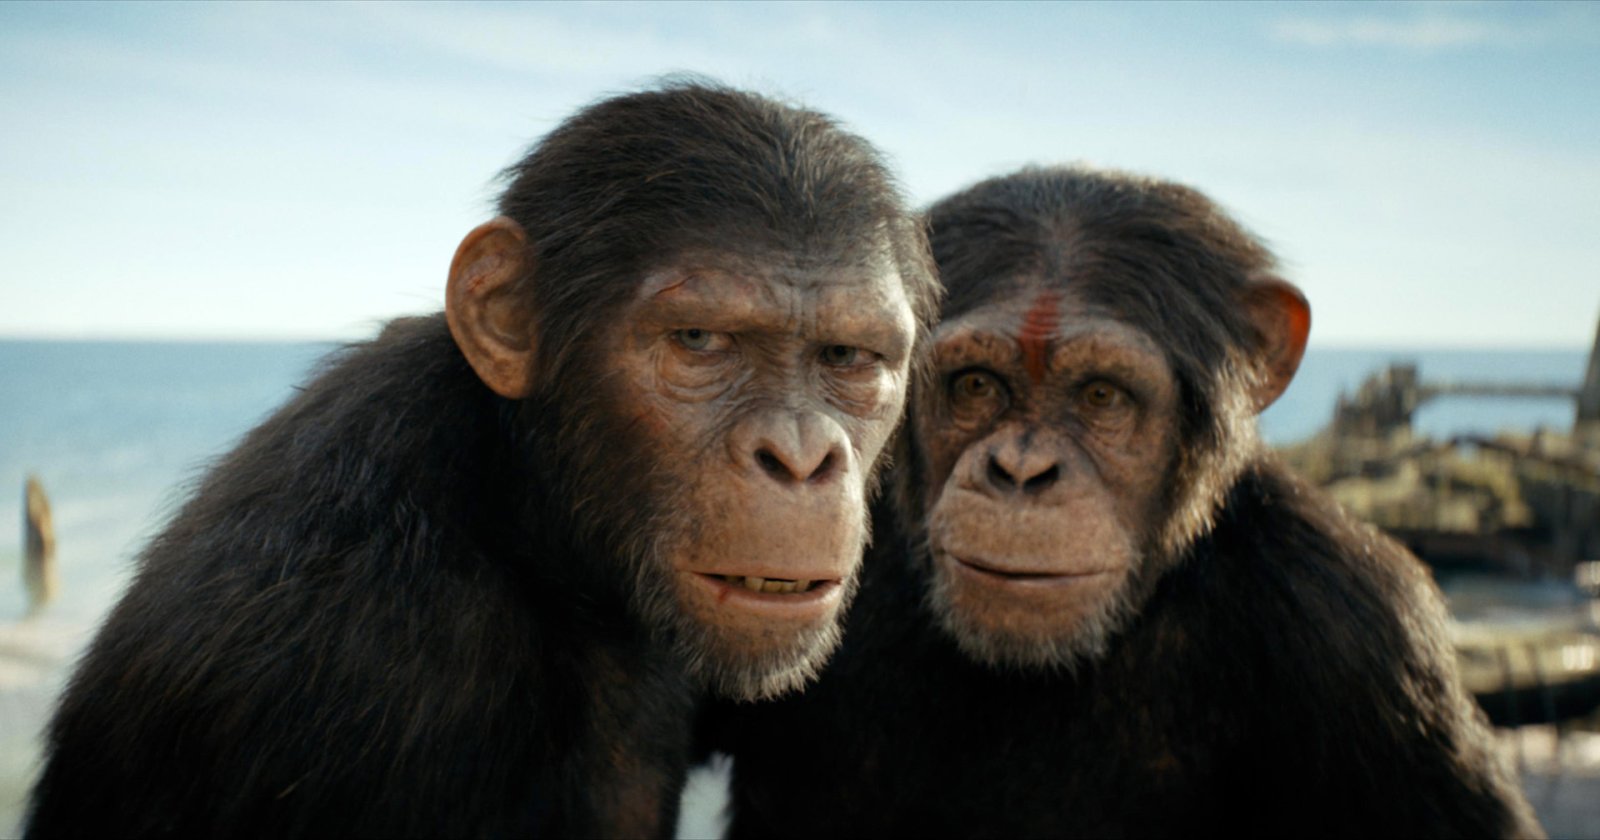 ตัวอย่างใหม่ ‘Kingdom of the Planet of The Apes’: สู่พิภพวานรโดยสมบูรณ์ ที่มนุษย์เป็นเพียงทาส